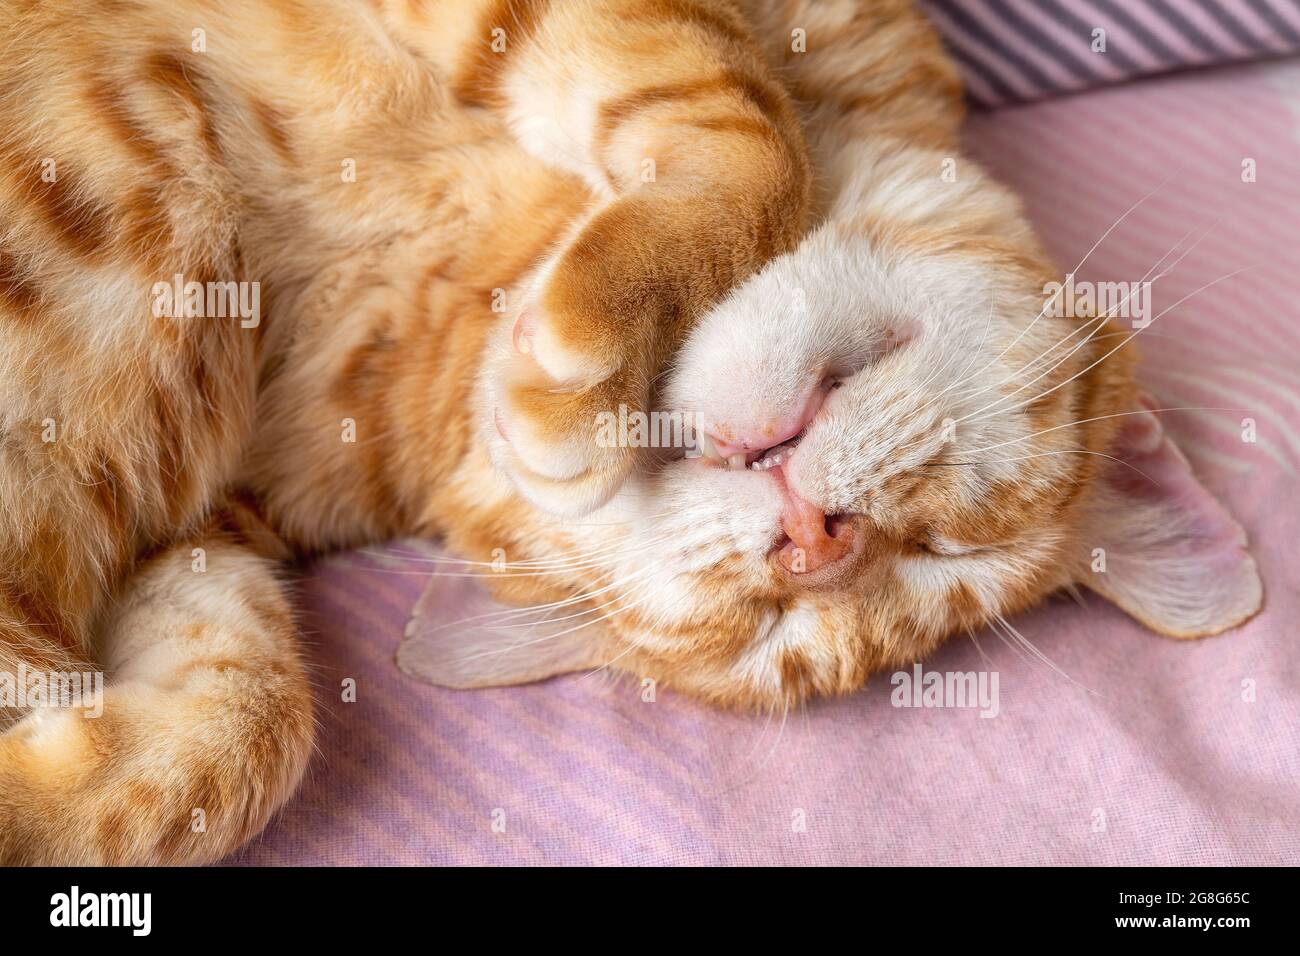 Erwachsene rotbraune weiße Katze schläft süß mit dem Kopf nach unten.  Hauskatze rollte sich zusammen und schlief friedlich zu Hause. Haustier  Alltag. Draufsicht Stockfotografie - Alamy